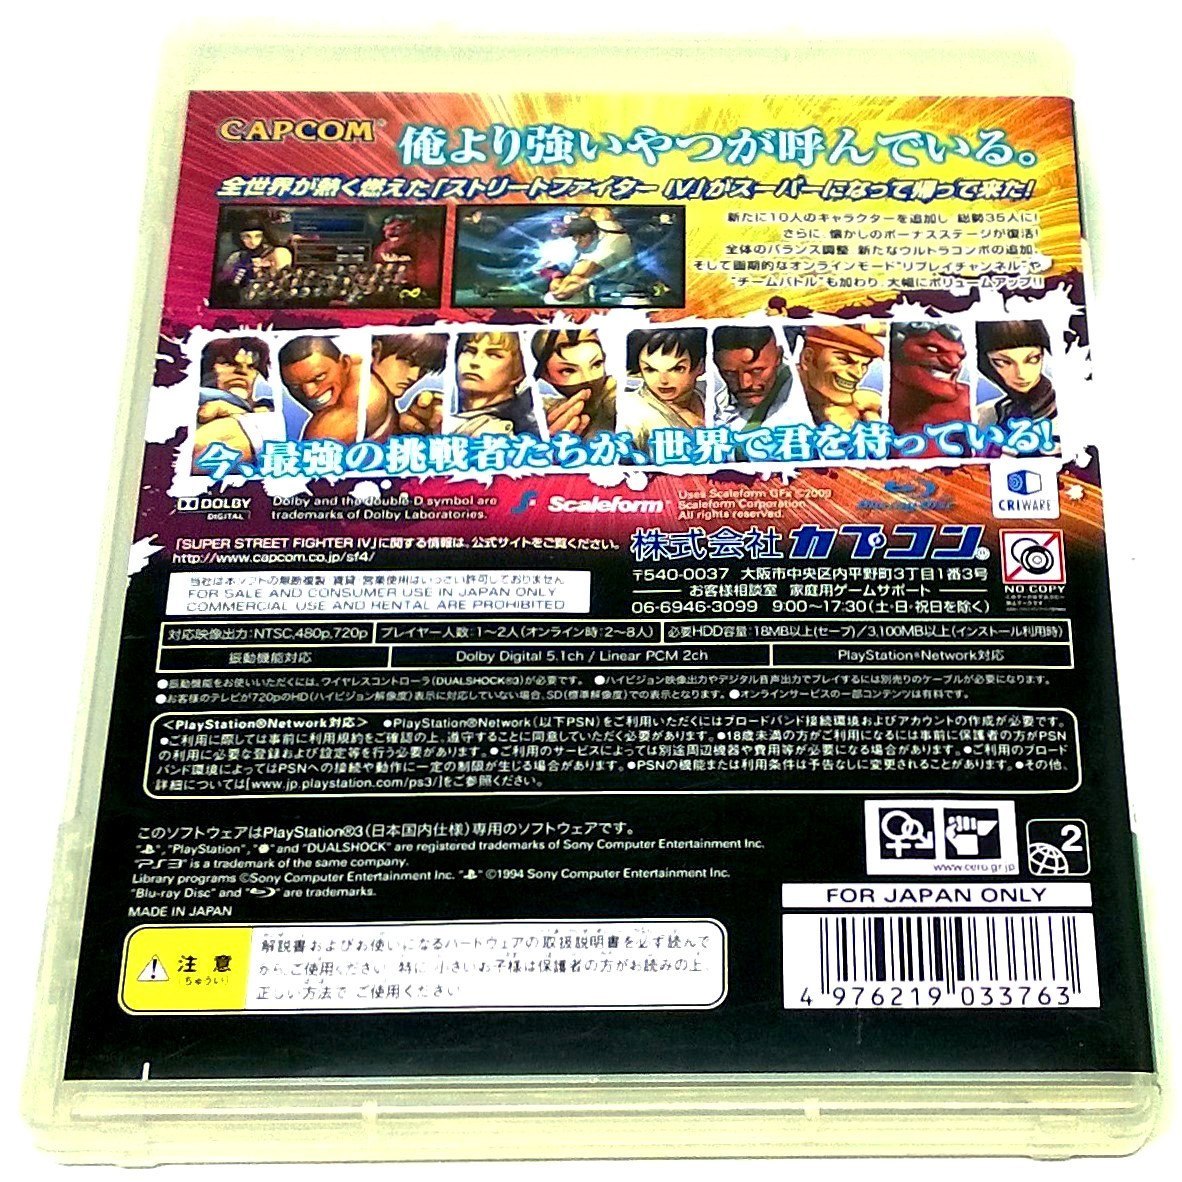 Game - Super Street Fighter IV